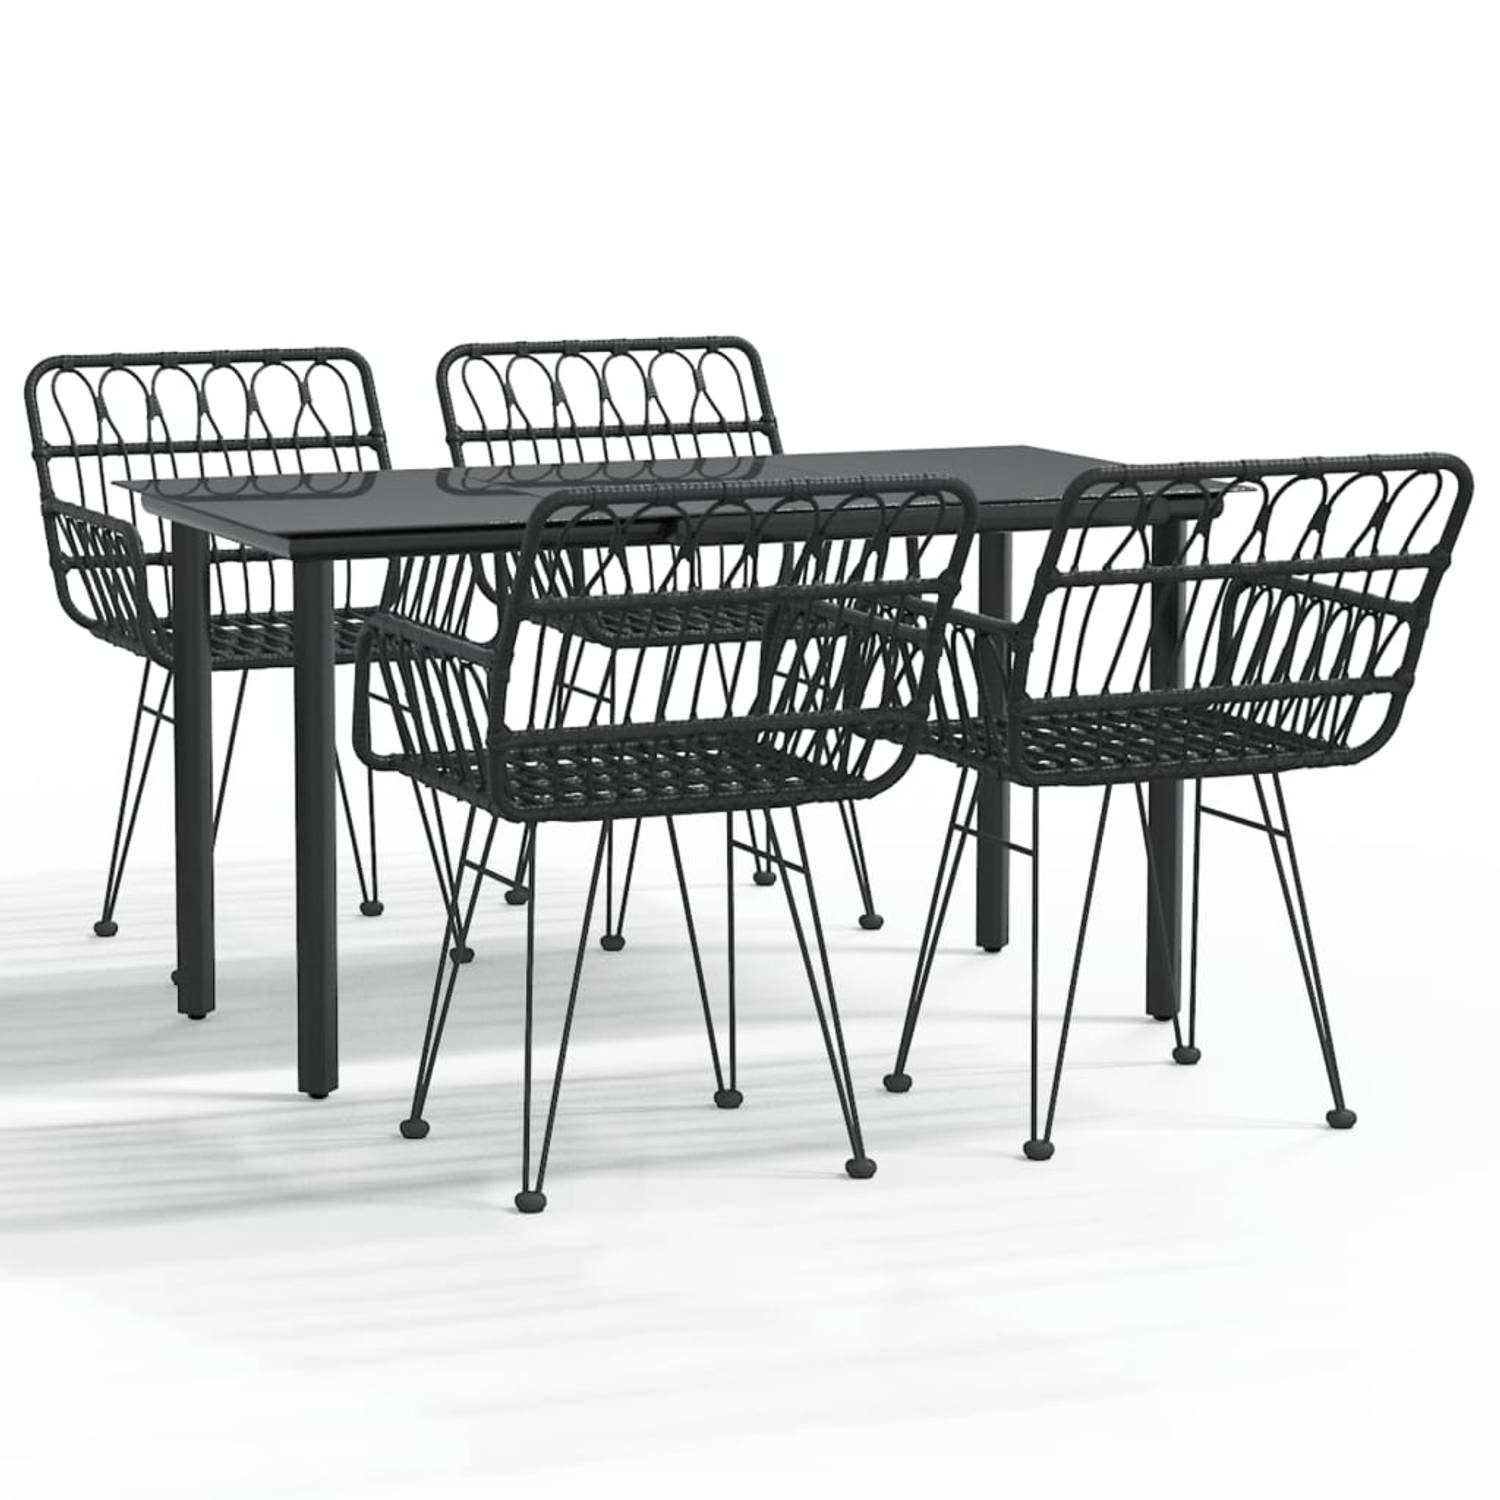 The Living Store Tuinset - PE-rattan - Stalen frame - Gehard glazen tafelblad - Comfortabele zitplaats - Praktische pootdoppen - Kleur- zwart - Afmetingen- 140 x 70 x 74 cm (L x B